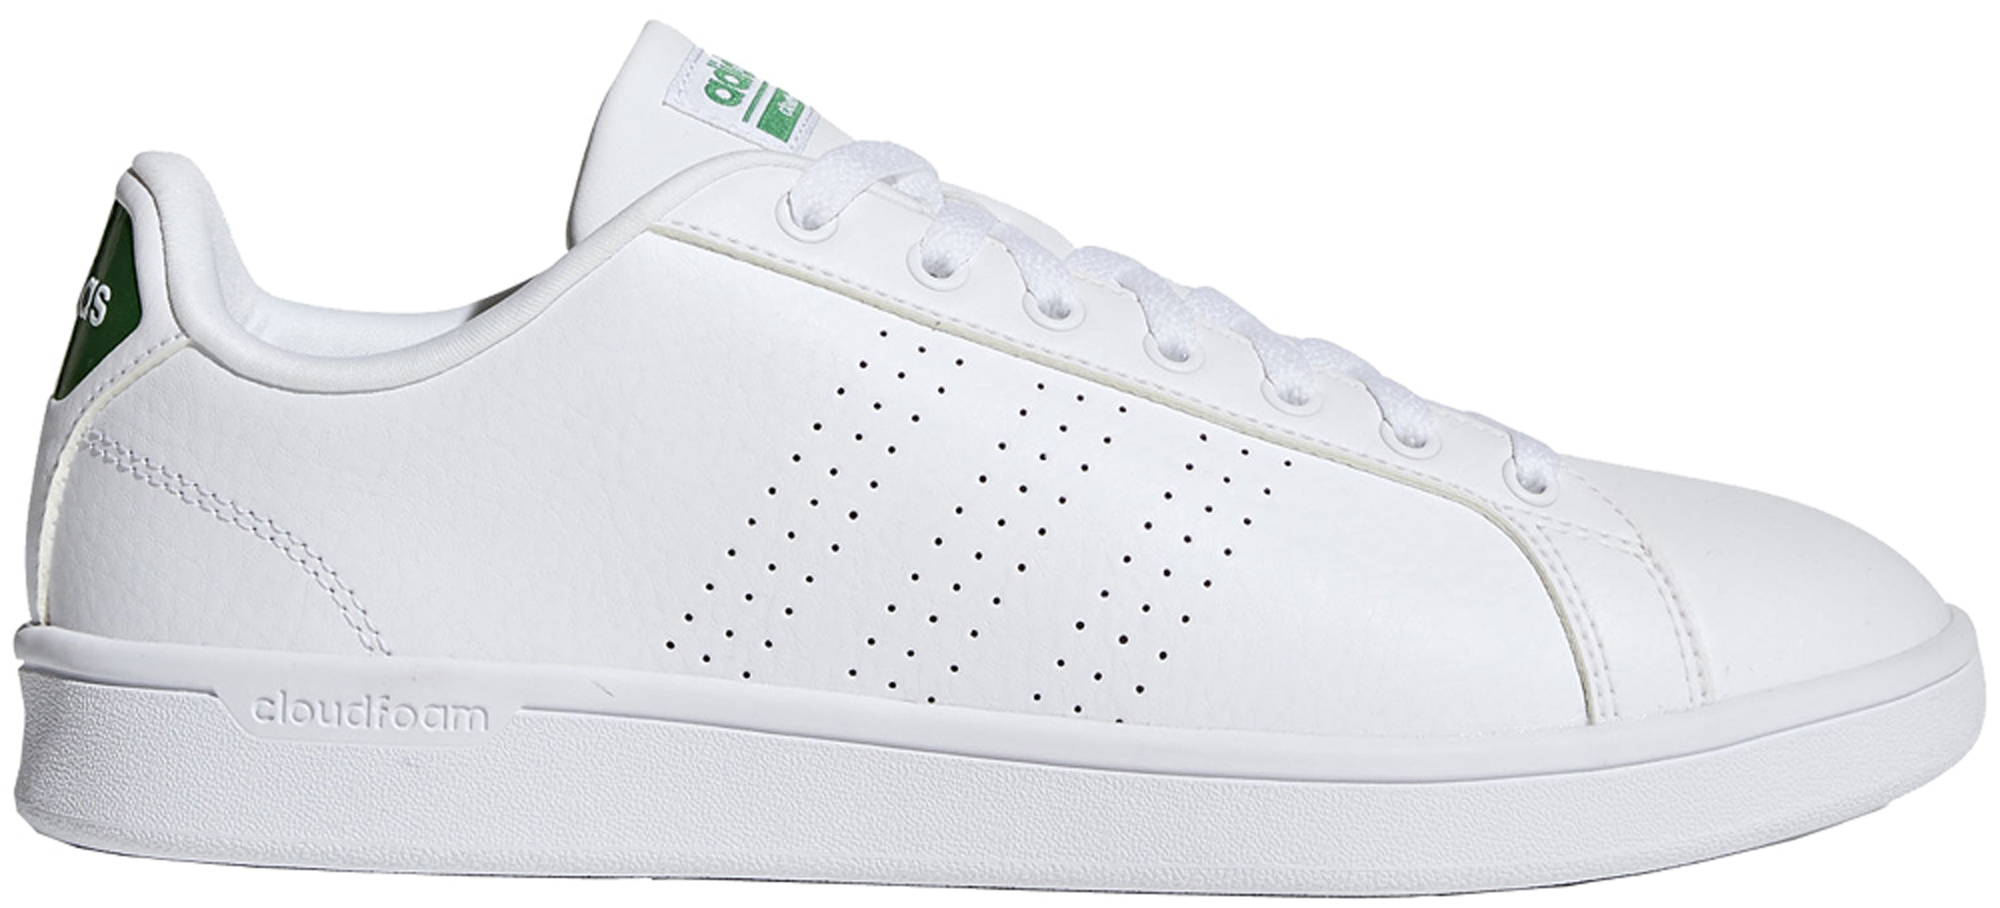 adidas advantage white green